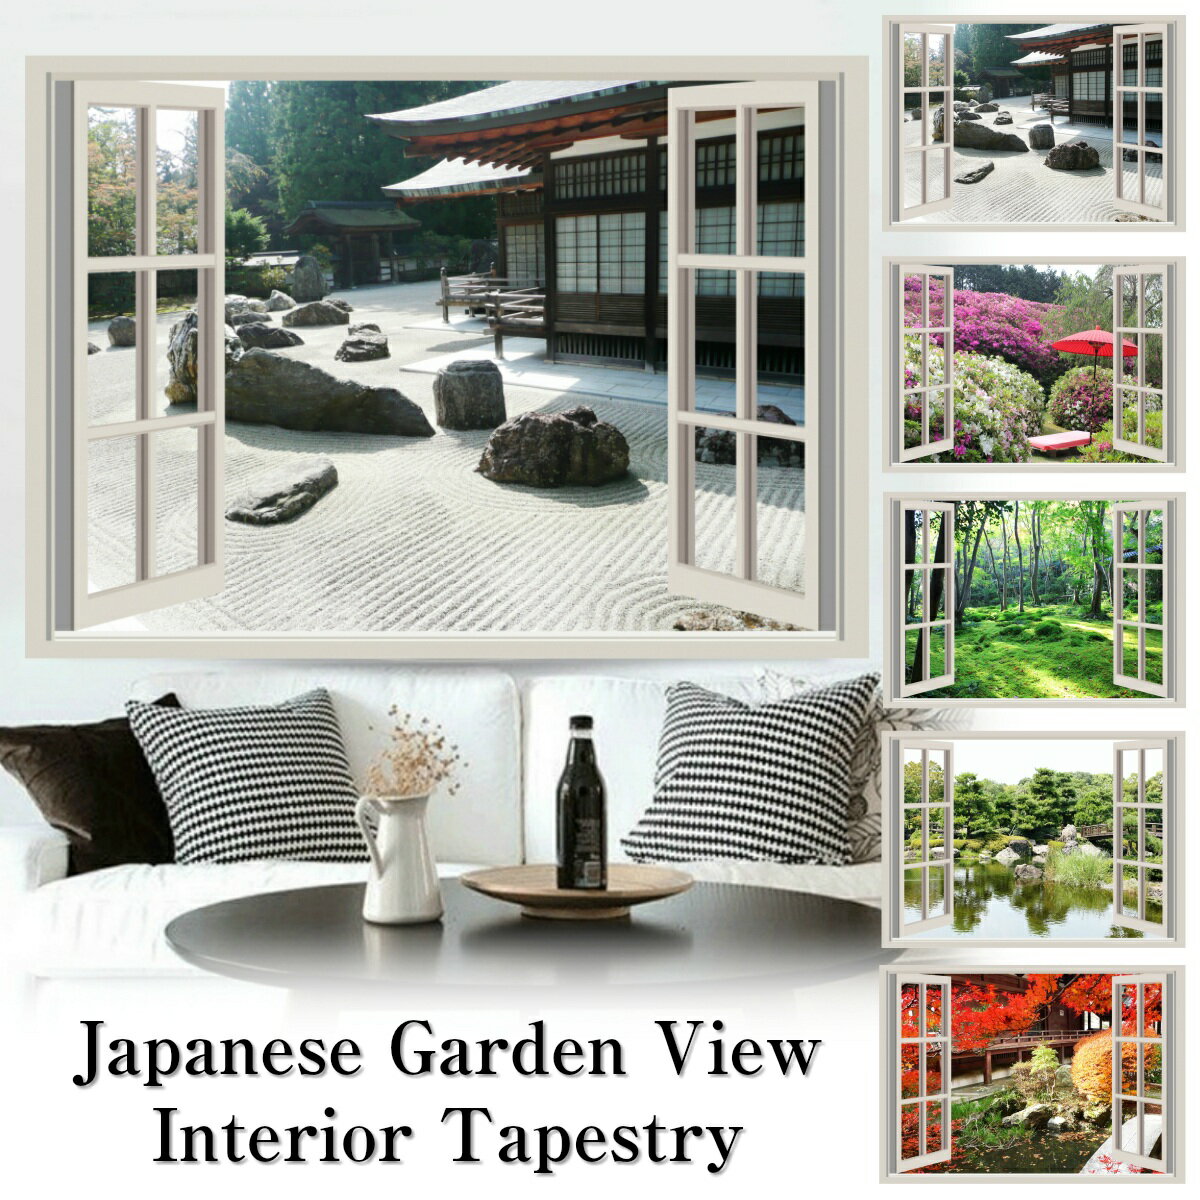 和庭園 タペストリー 日本庭園 庭 